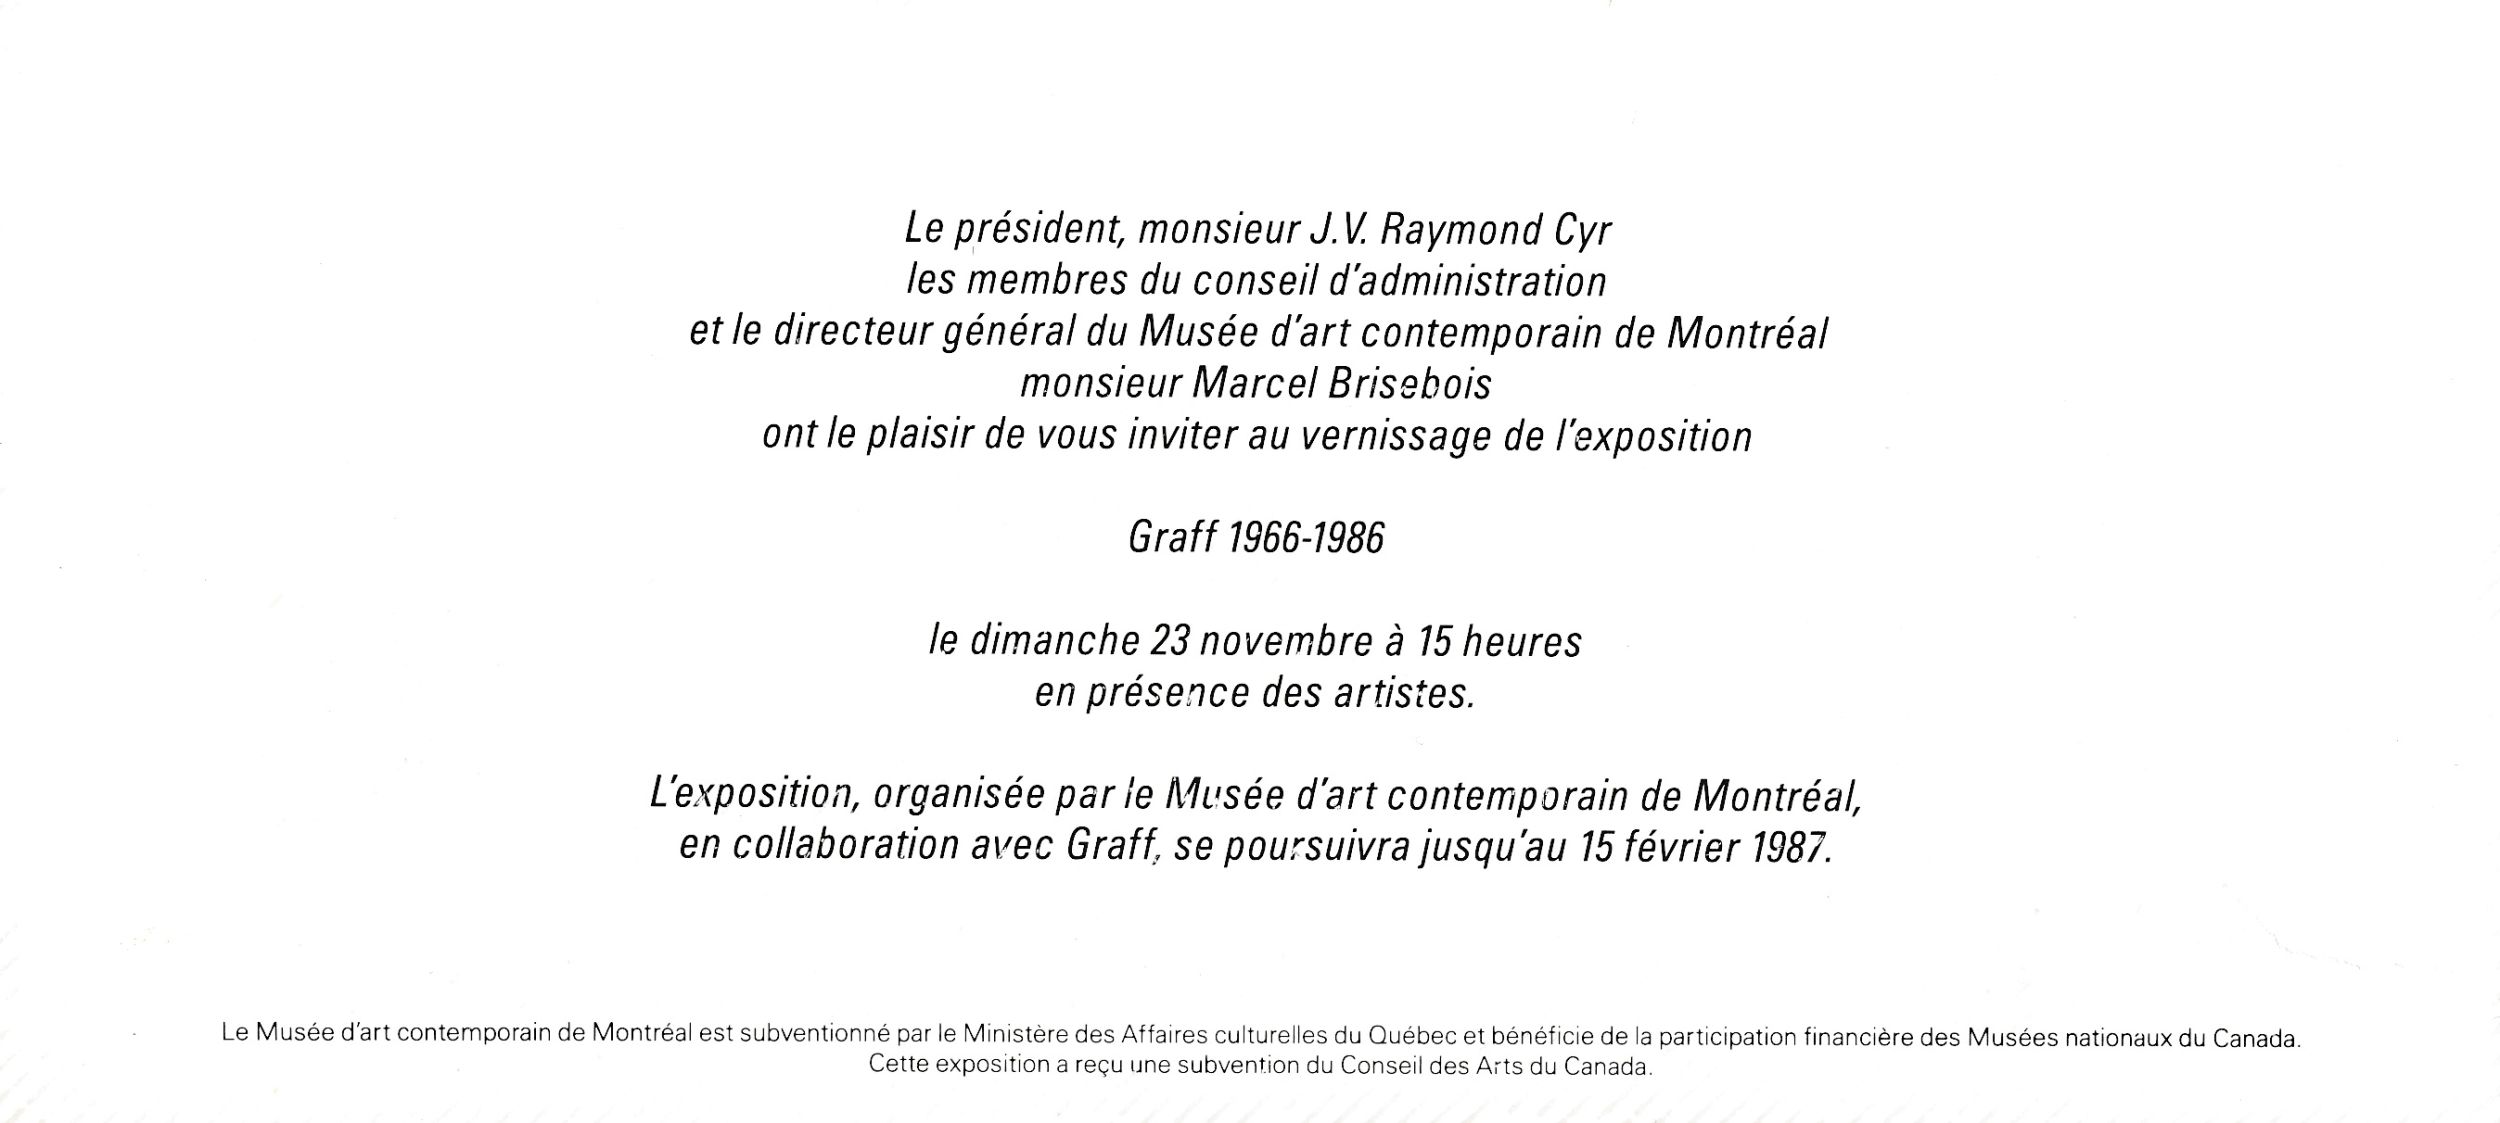 Carton d’invitation de l’exposition Graff 1966-1986, Musée d'art contemporain de Montréal, 1986. Verso.